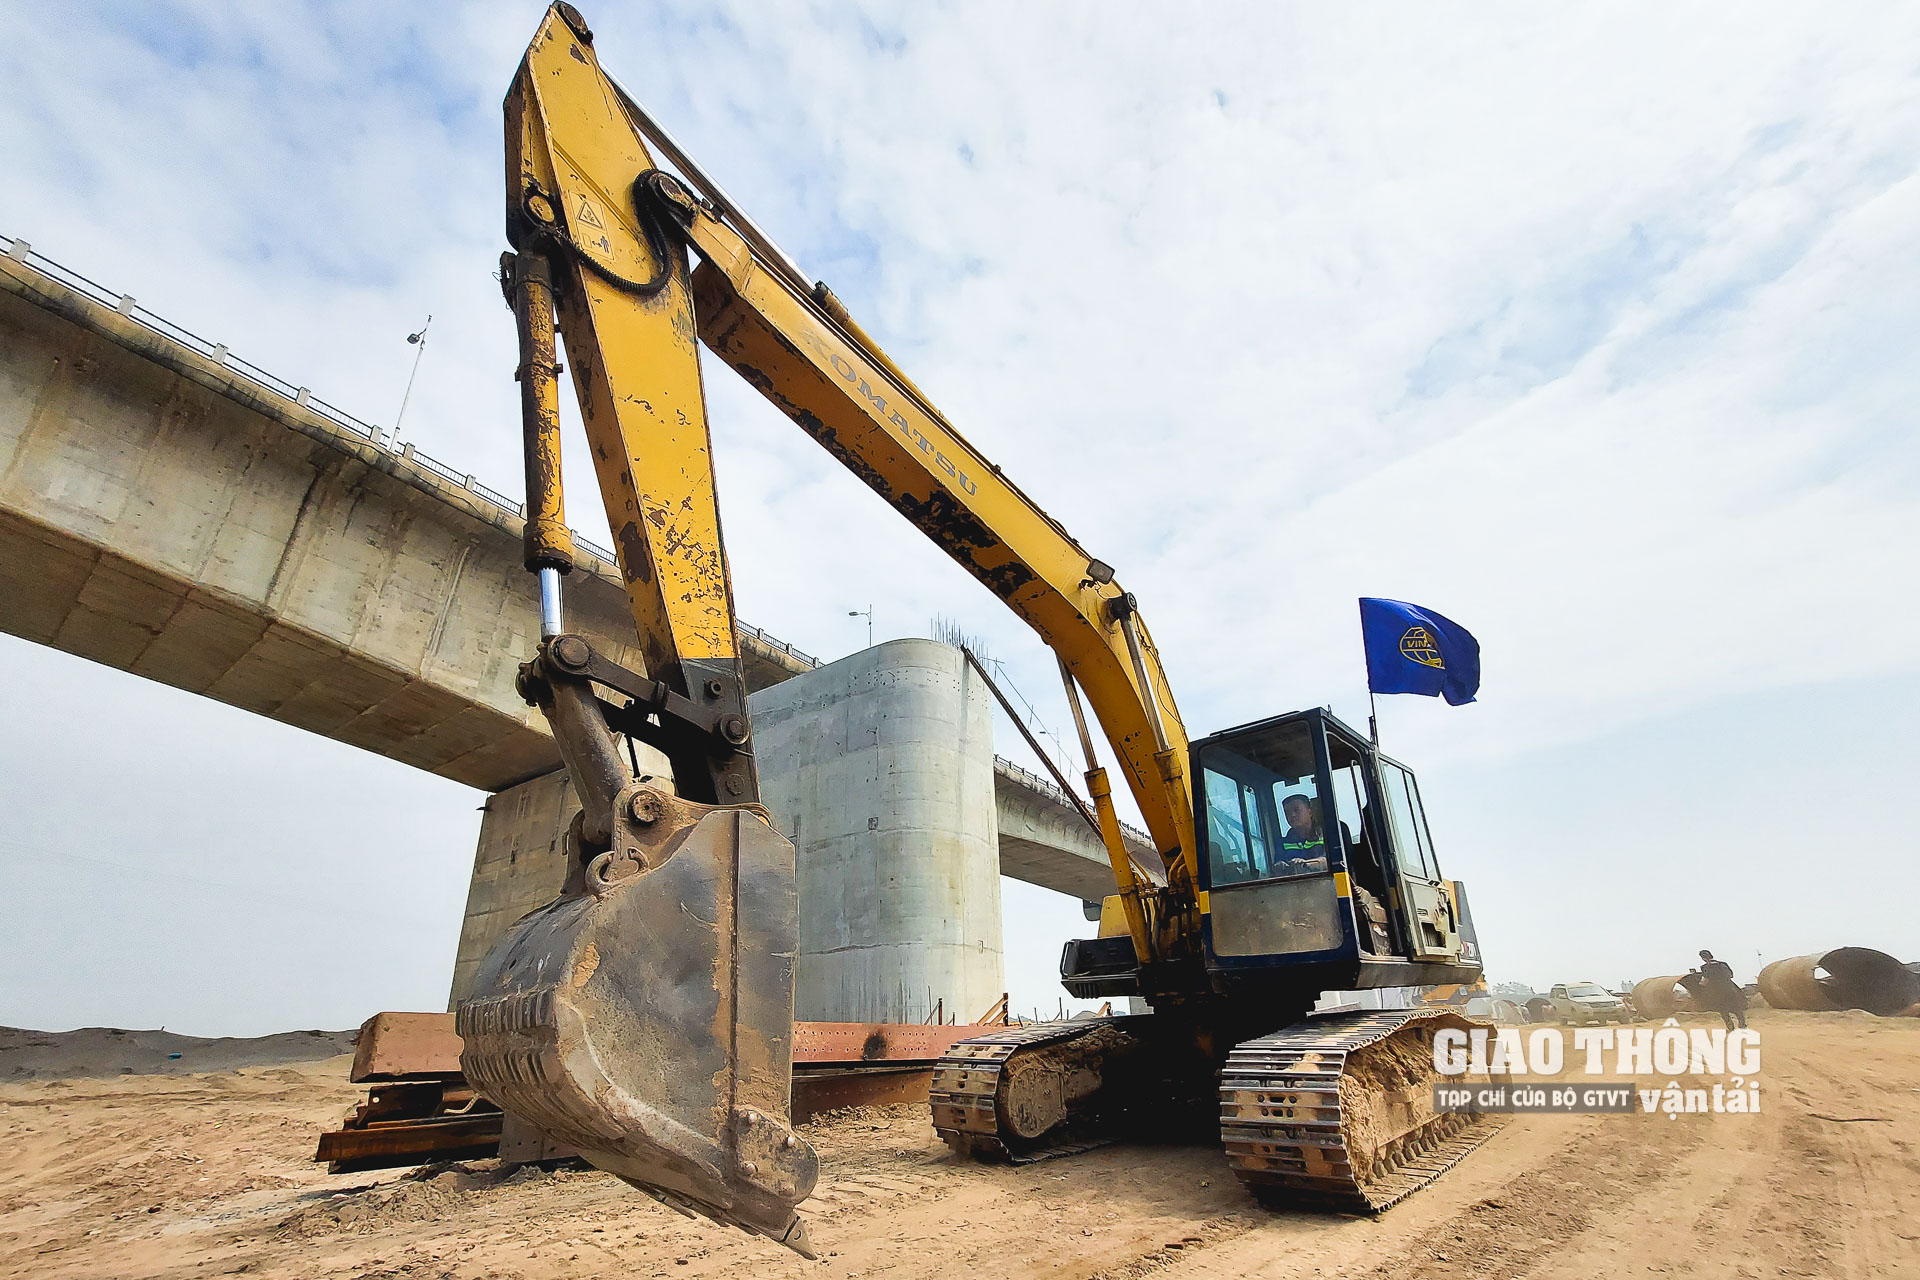 Ngoài gói thầu XL1, Vinaconex còn đảm nhiệm thi công tại gói thầu XL05 của dự án cầu Vĩnh Tuy 2: Thi công xây dựng cầu dẫn và đường dẫn phía Long Biên. Sản lượng của gói thầu XL05 hiện đạt hơn 90%, vượt tiến độ so với kế hoạch của chủ đầu tư.